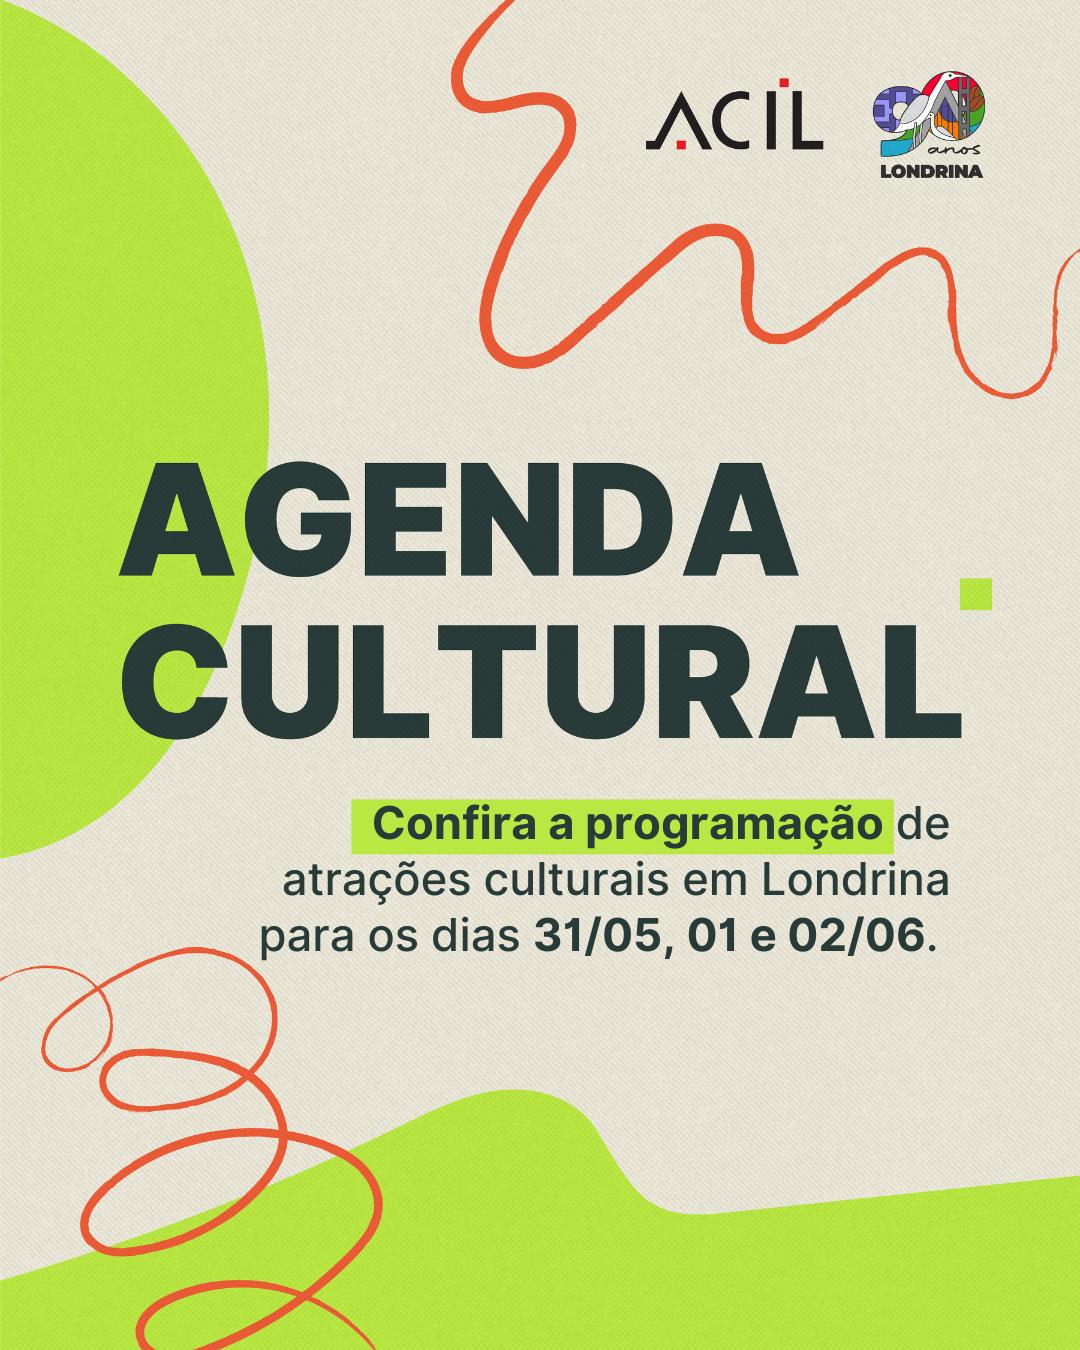 Agenda Cultural: confira a programação para o fim de semana em Londrina